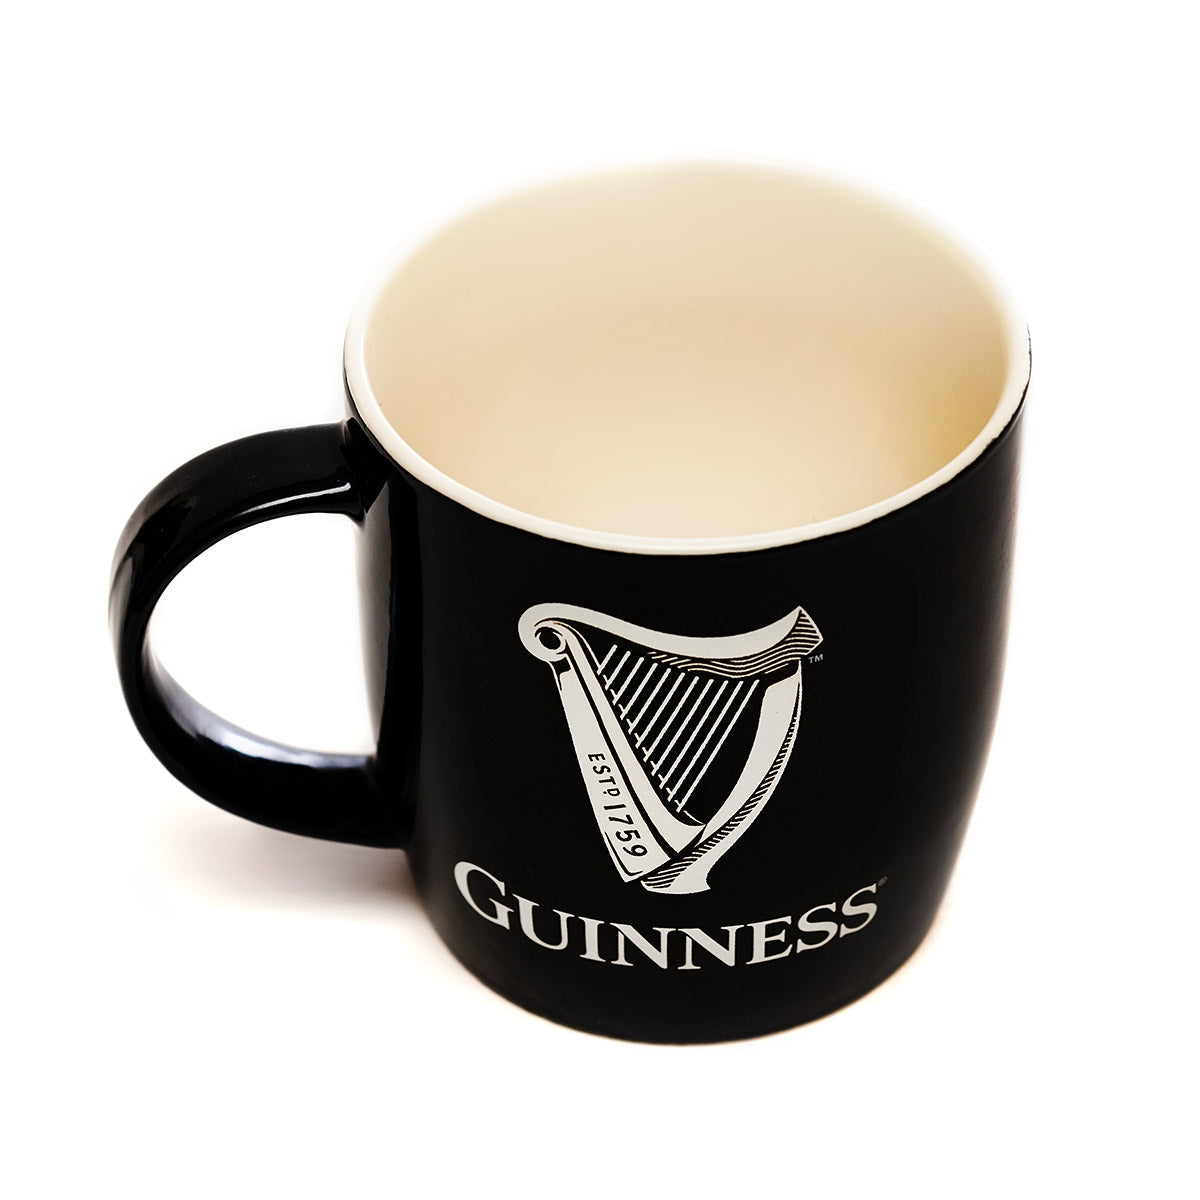 Guinness Black Mug with White Harp Logo